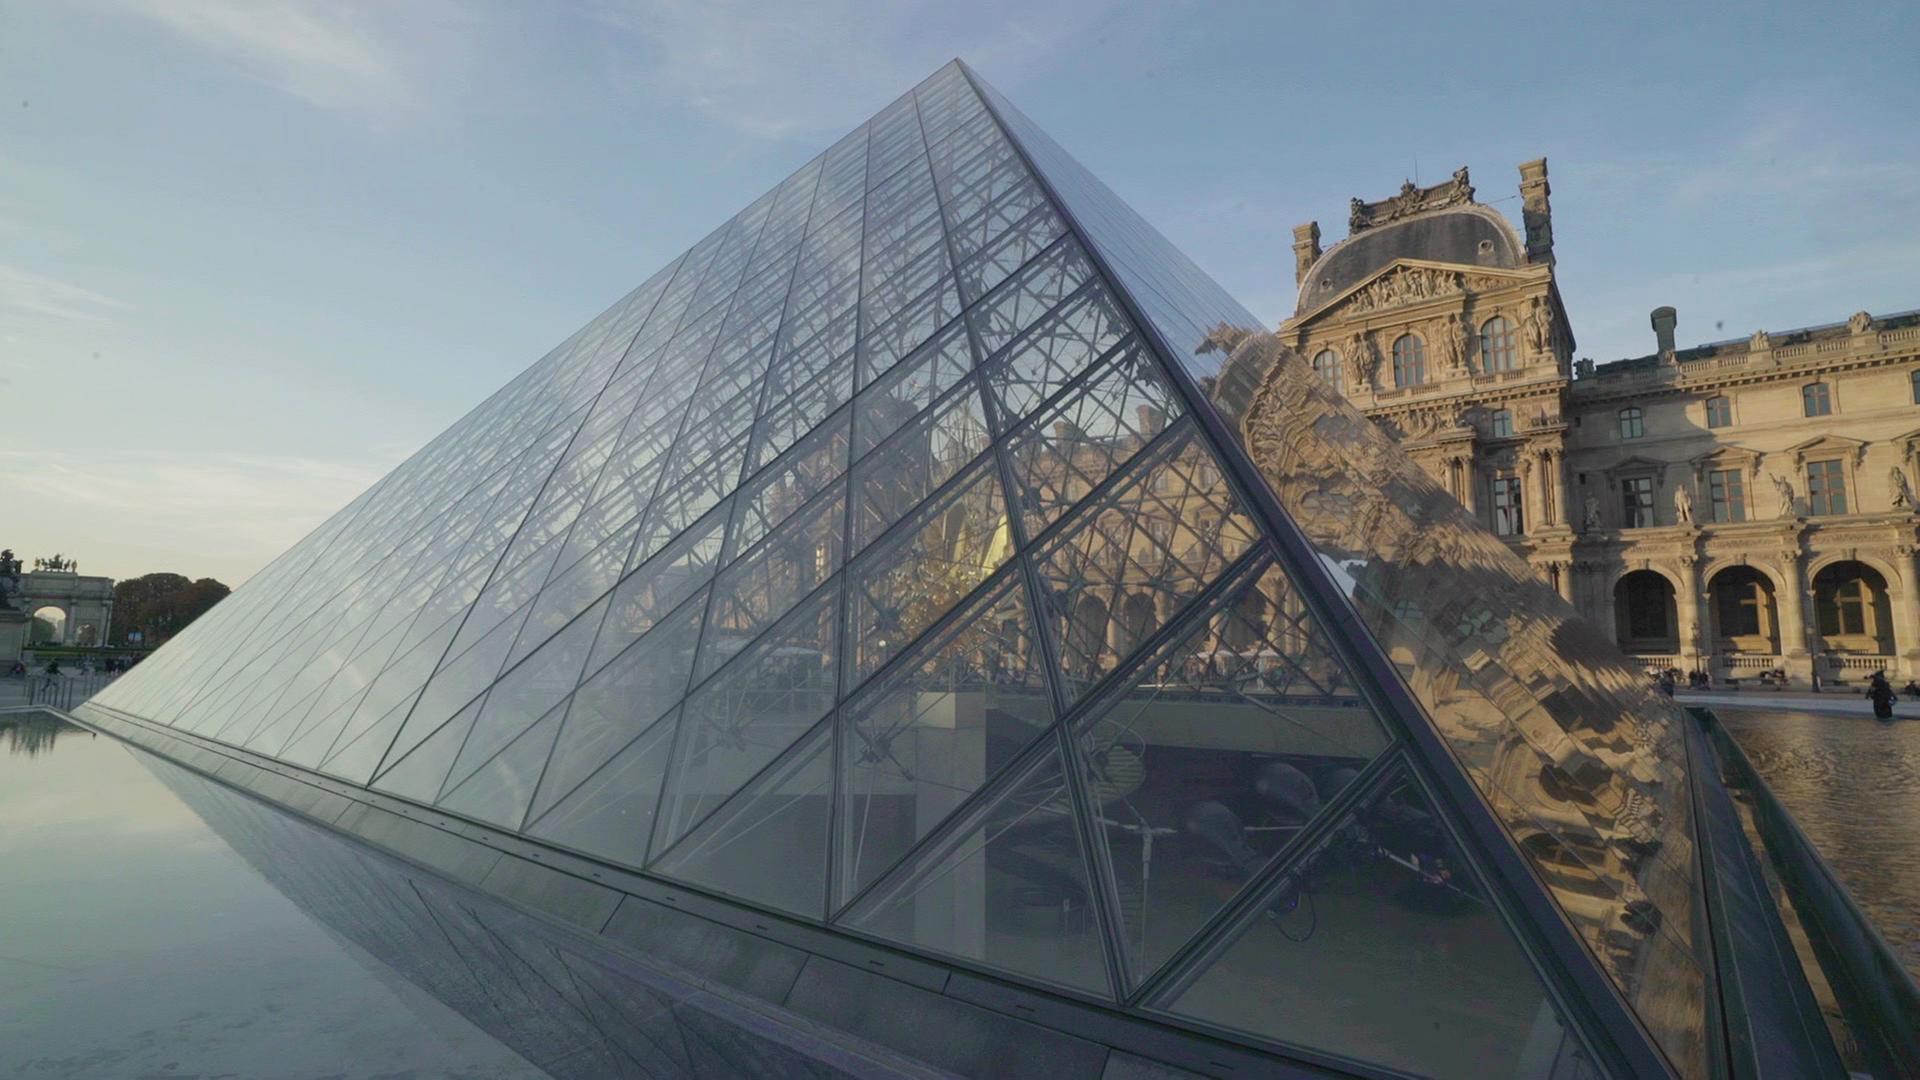 "Der Louvre - Das Weltwunder von Paris": Seitlicher Blick auf die Glaspyramide des Louvre.